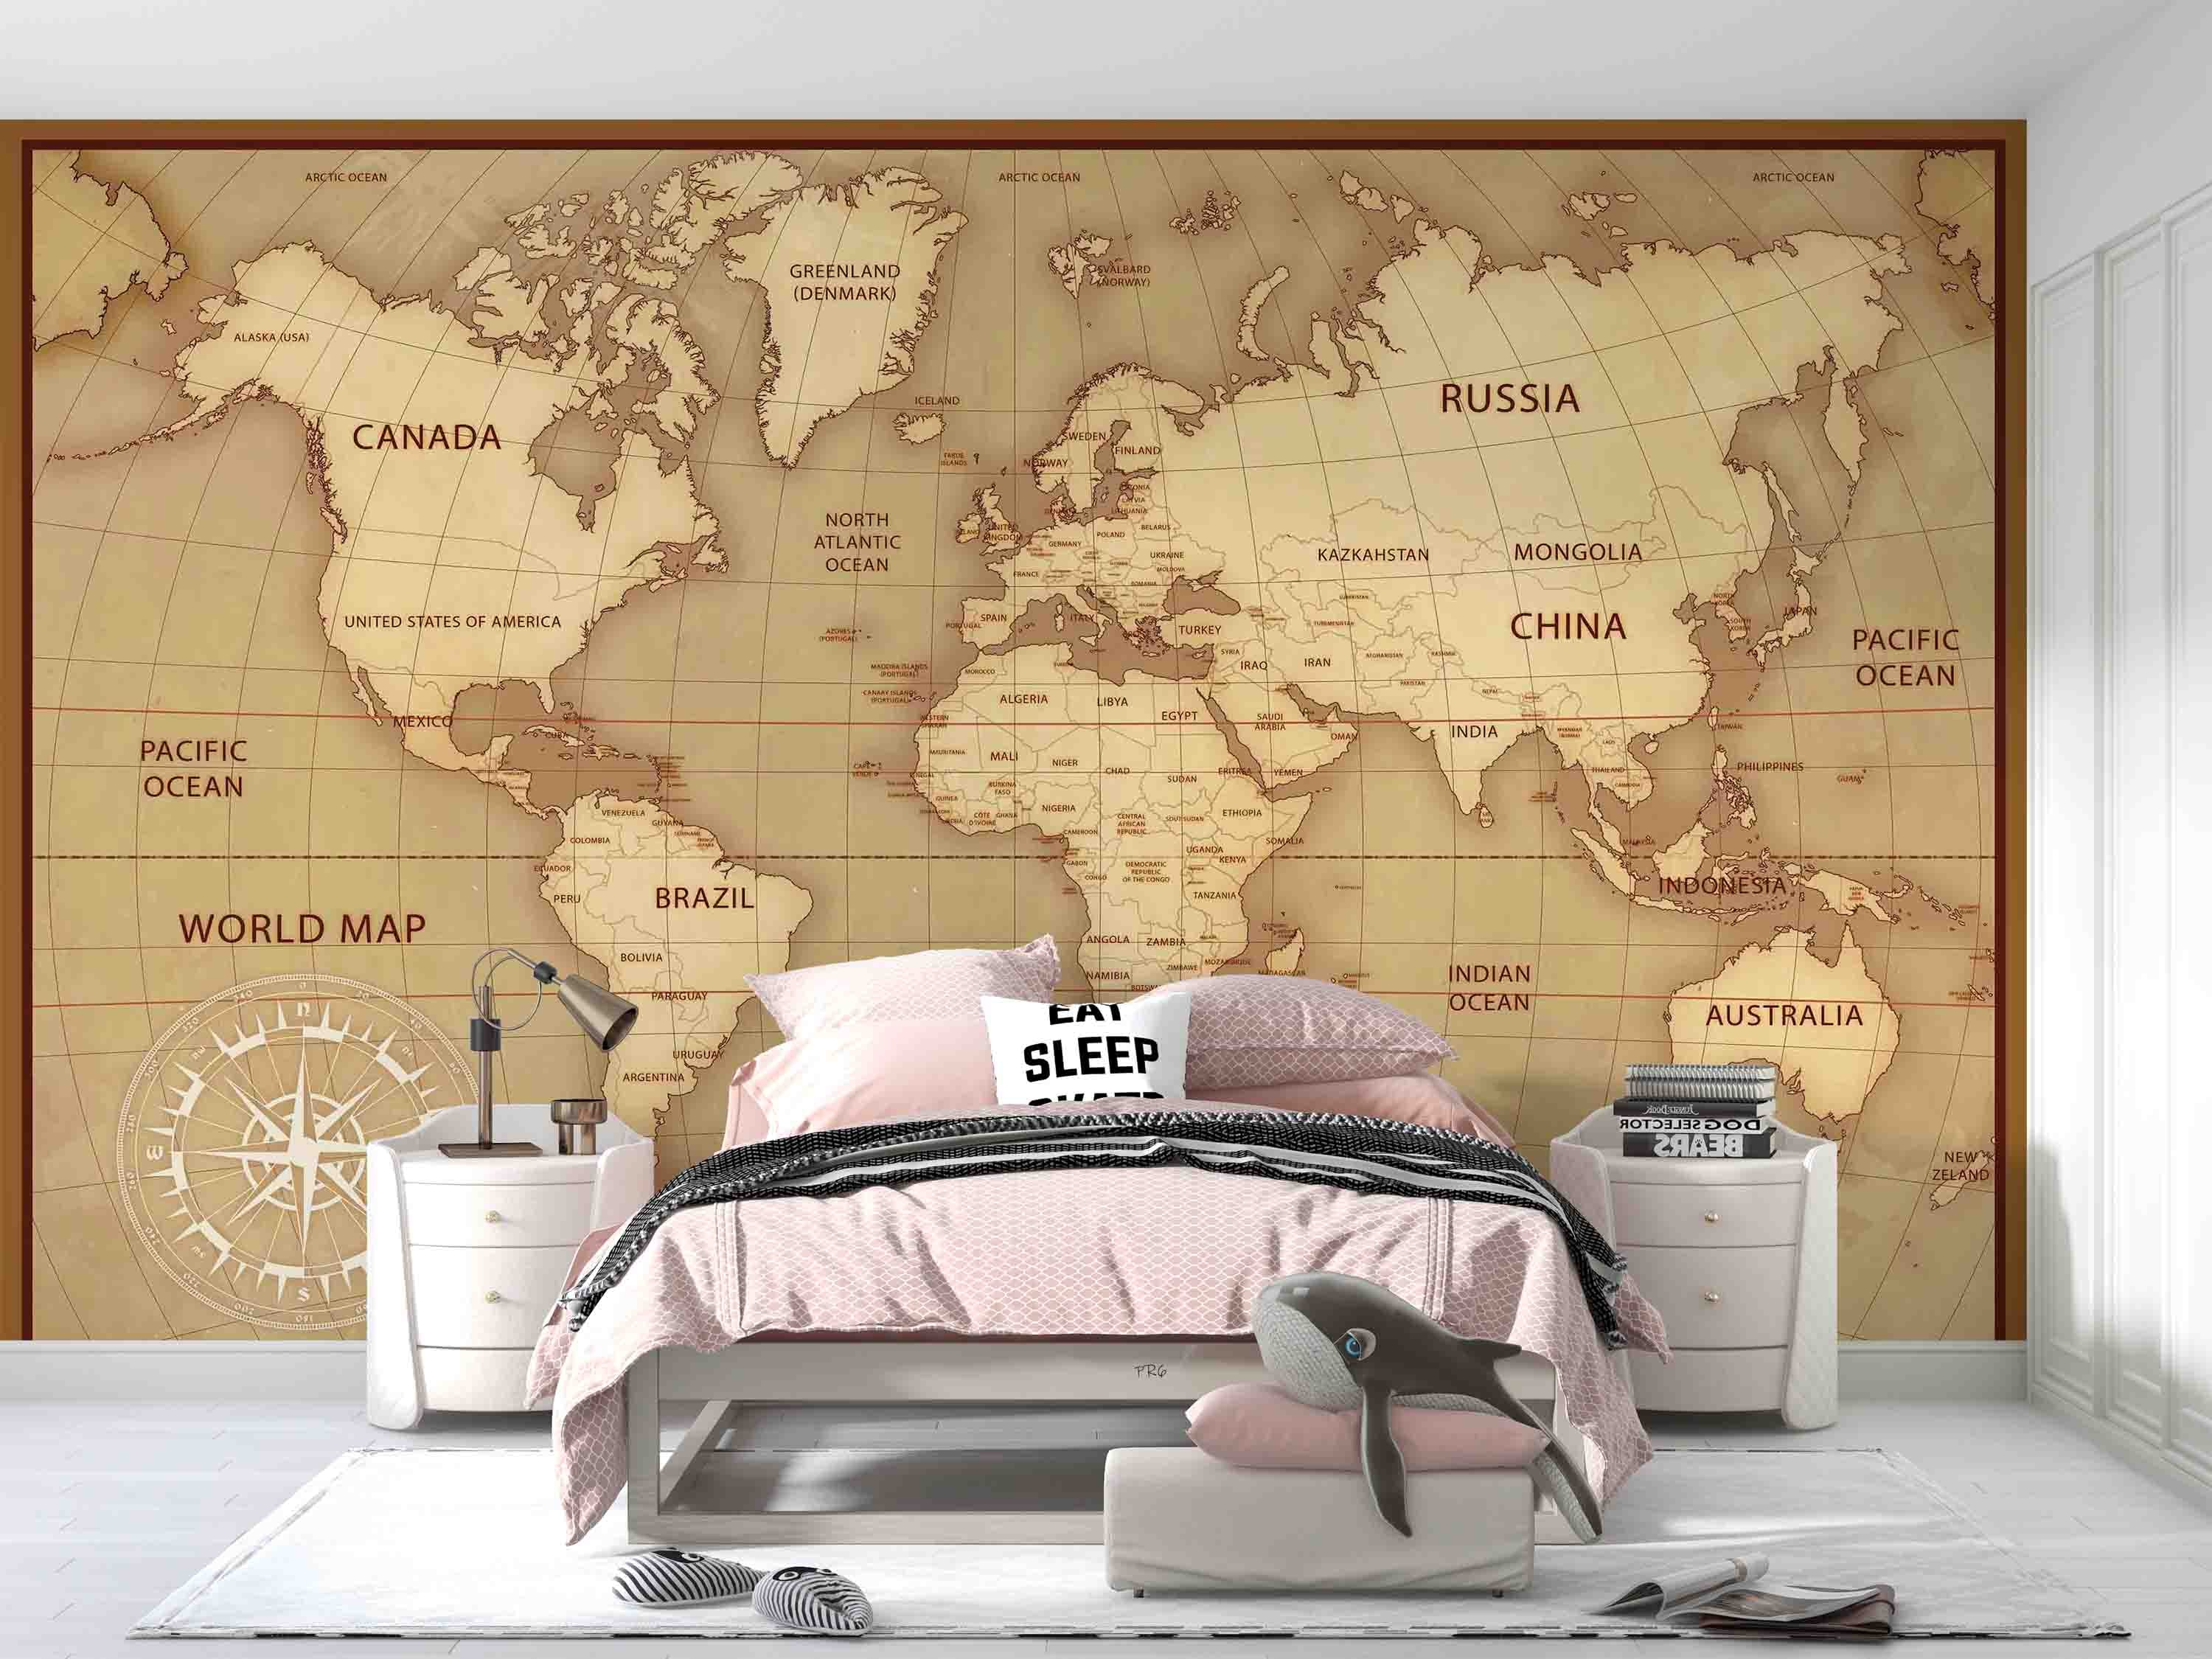 3D World Map Golden Line Toponym Wall Mural Wallpaper YXL 13- Jess Art Decoration